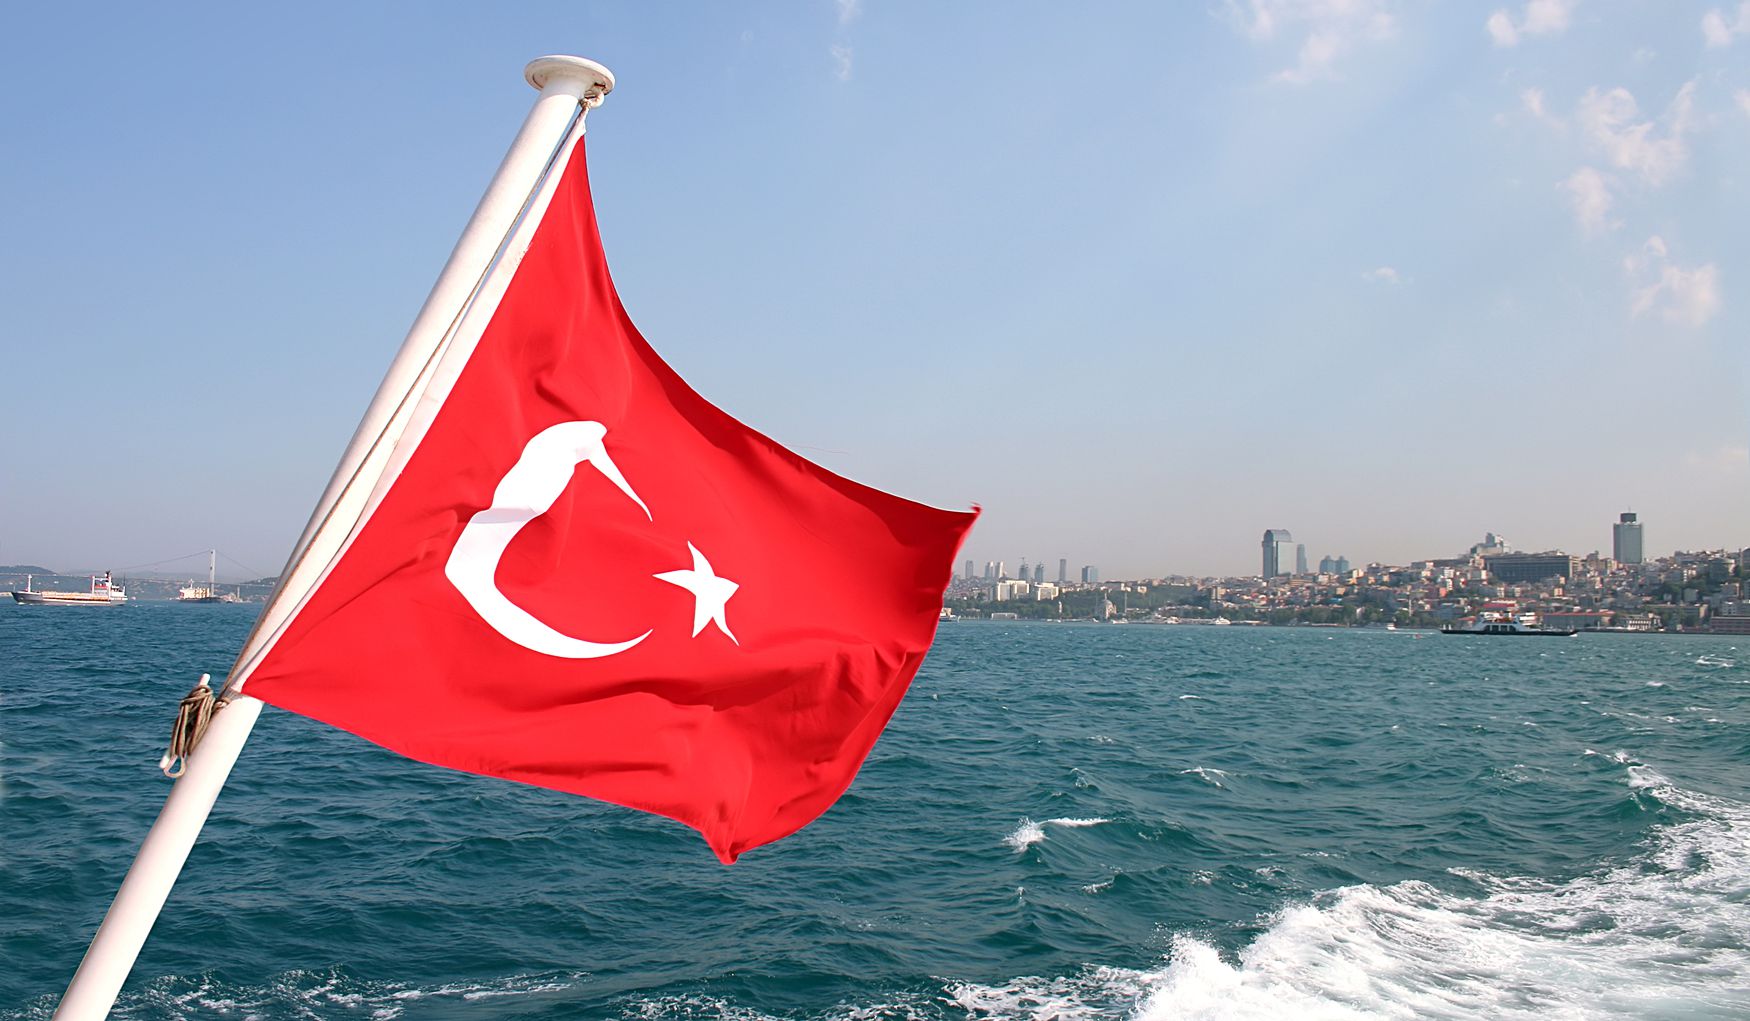 Համաշխարհային ազդեցության ցուցակում Թուրքիան 16-րդ տեղում է